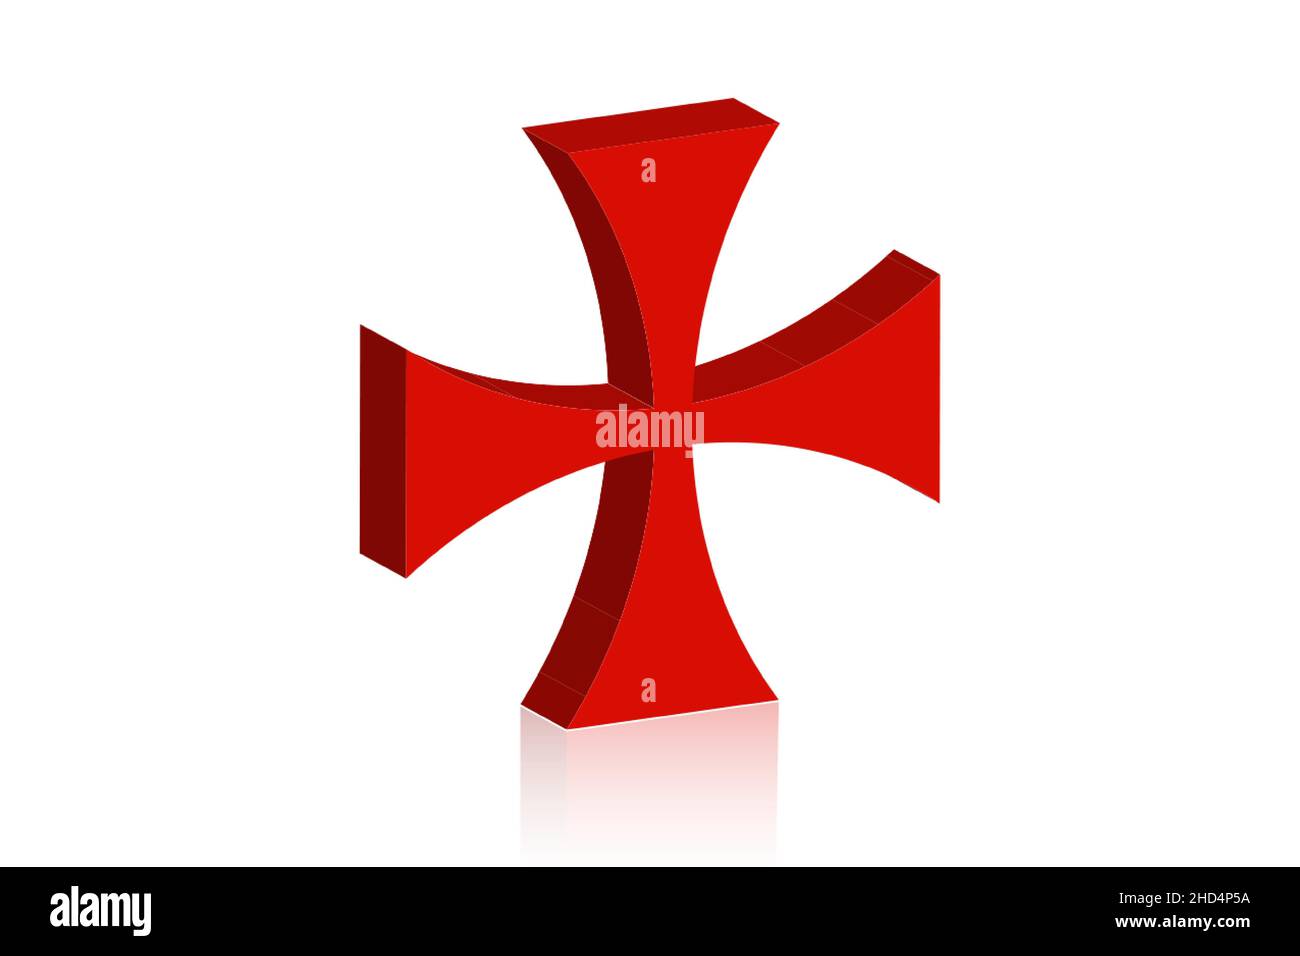 3D Croce dei Templari. Patea croce rossa simbolo dell'ordine dei Templari. Ordine cavalleresco spirituale fondato in Terra Santa nel 1119. Vettore isolato su w Illustrazione Vettoriale